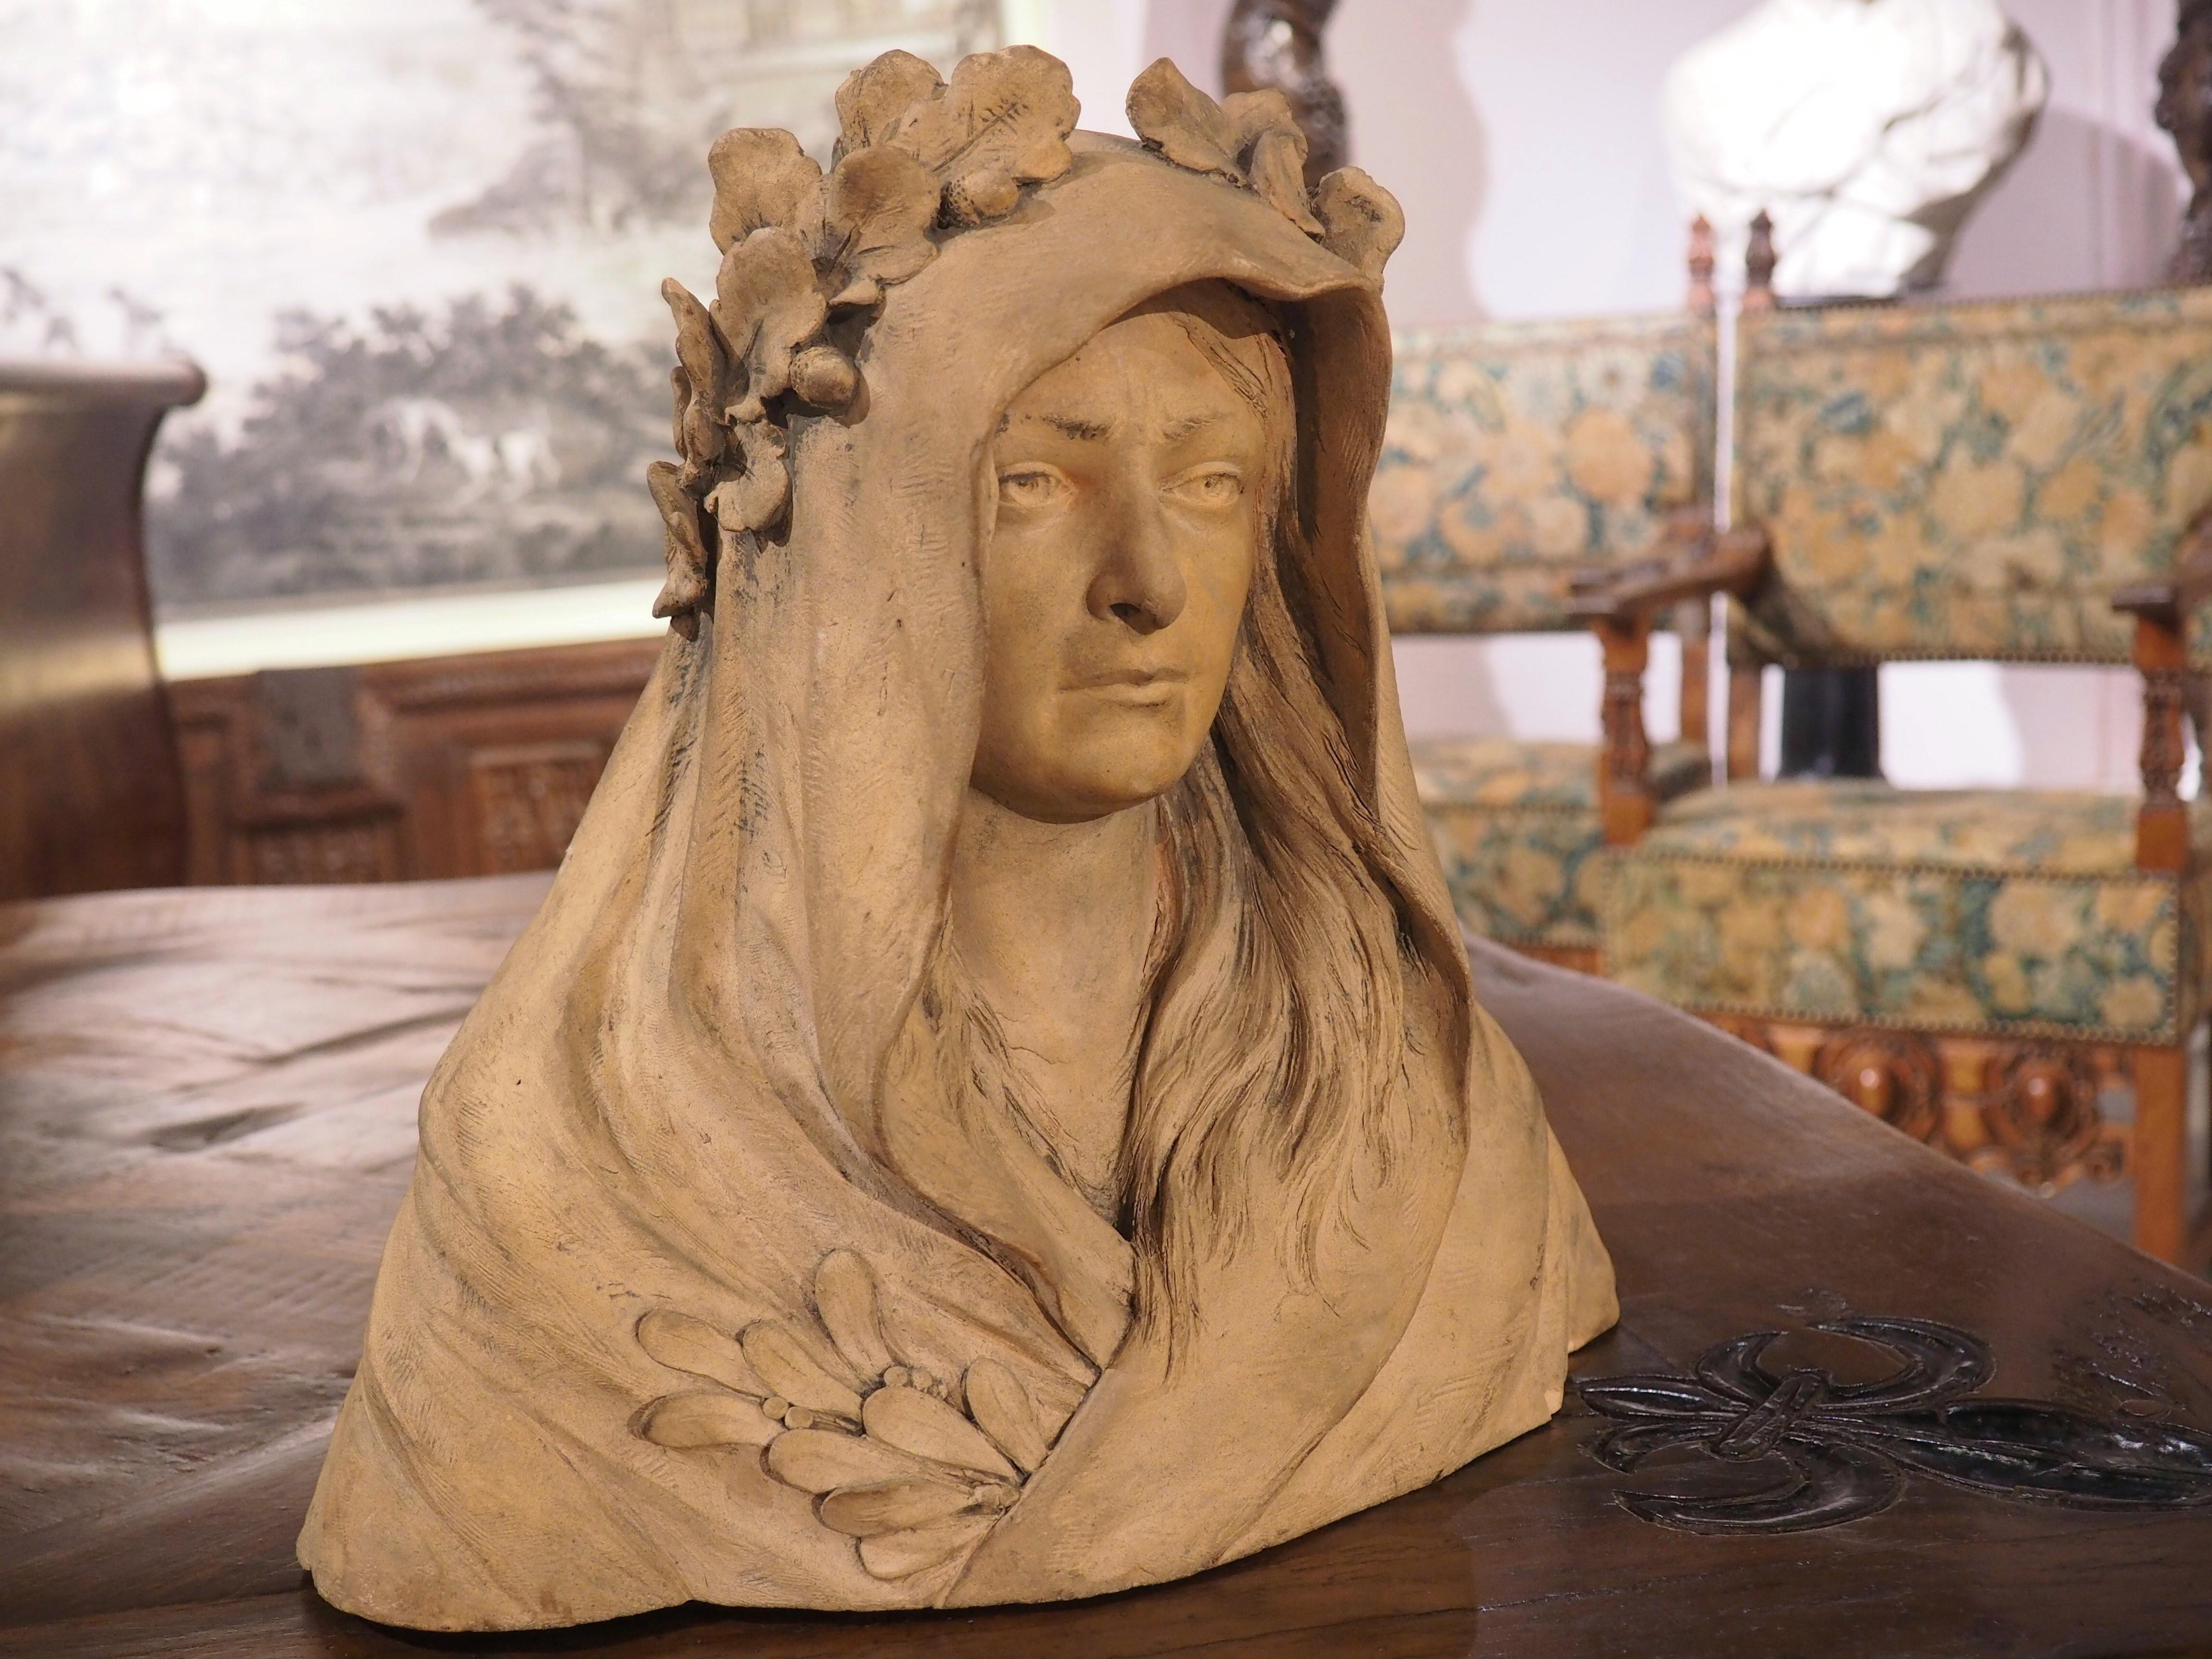 Ce buste de femme en terre cuite présente des détails exquis. Sculpté en France à la fin des années 1800 ou au début des années 1900, notre sujet a de longs cheveux raides qui émergent de dessous un vêtement à capuchon, peut-être un manteau de